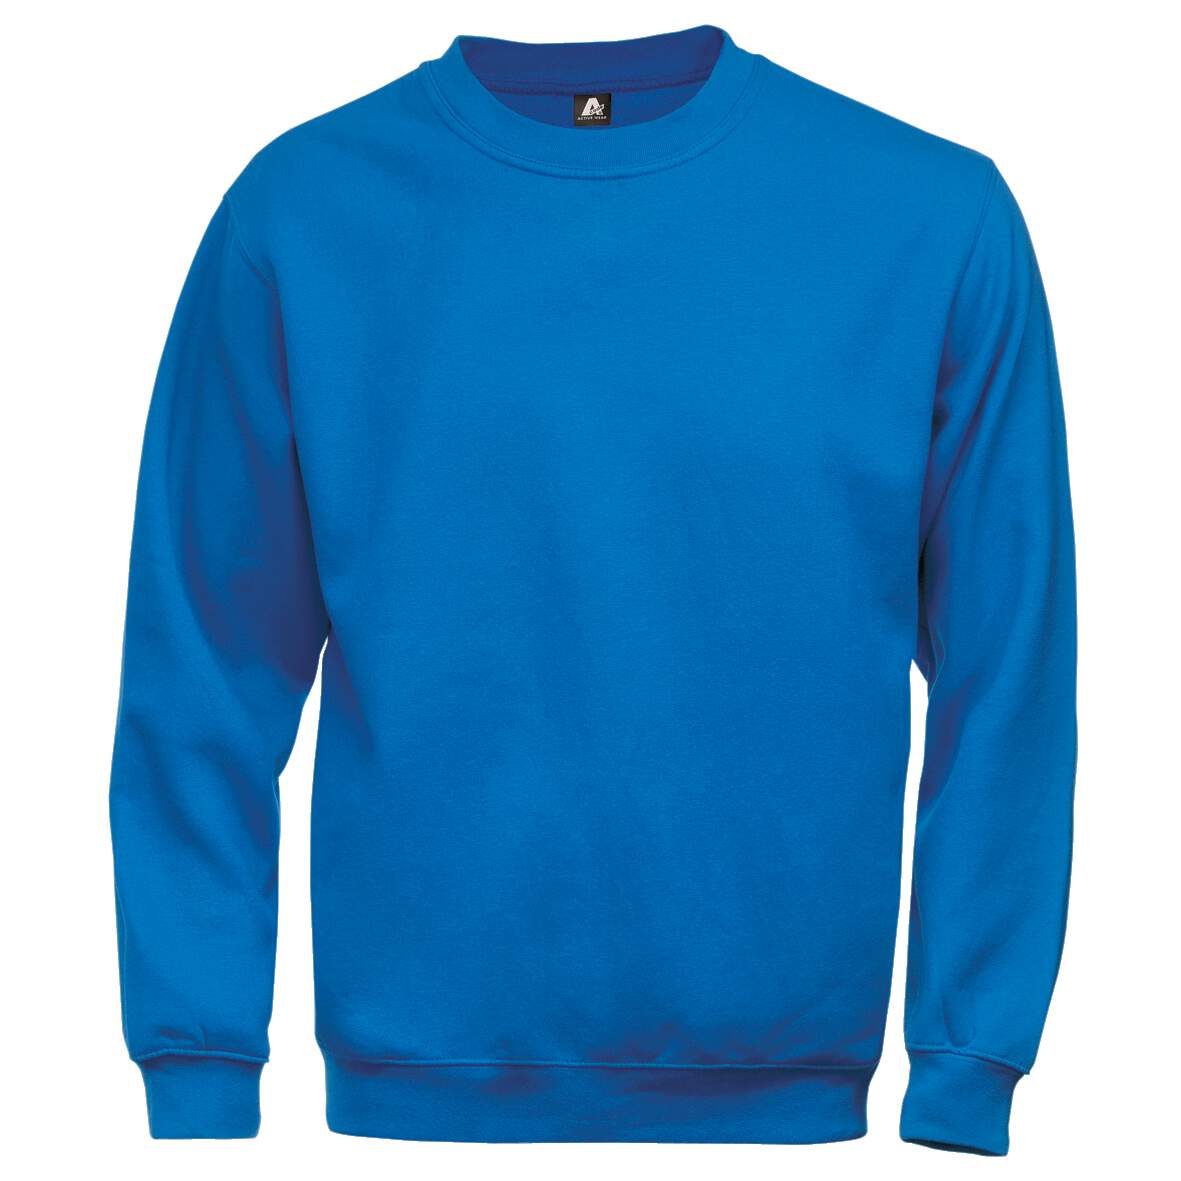 1181250 - Sweatshirt königsblau 100225